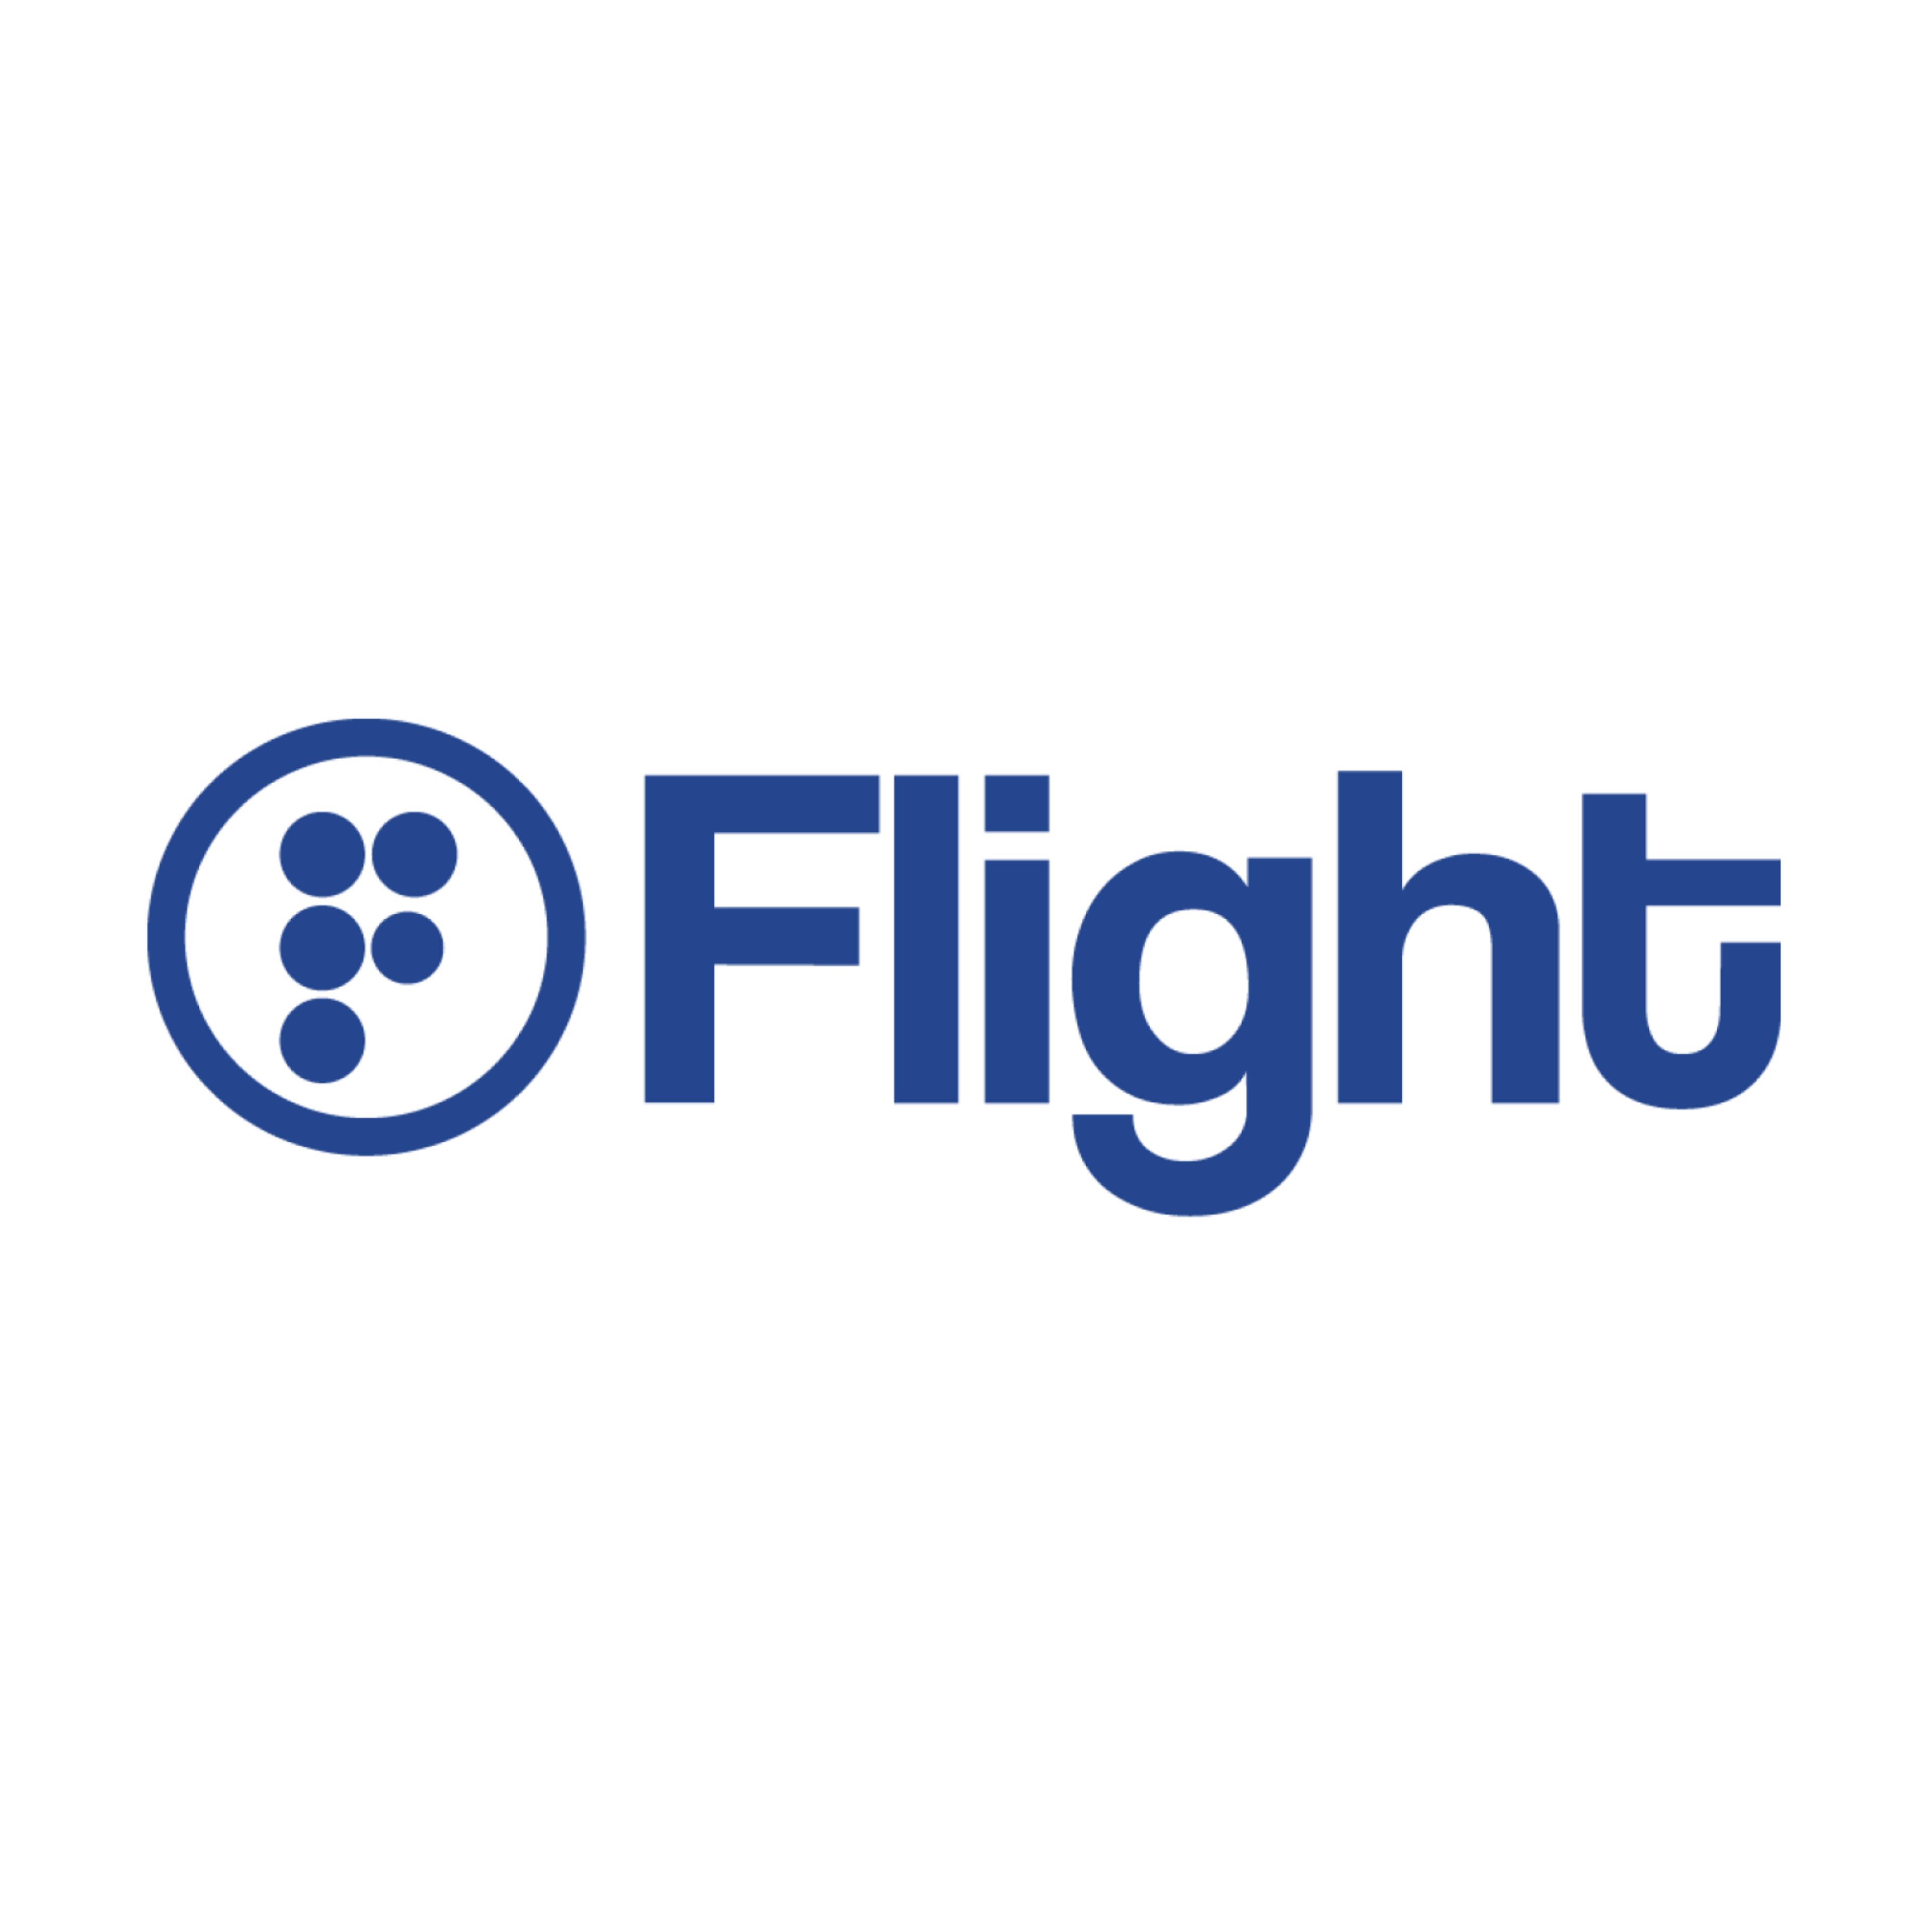 Flight Digital